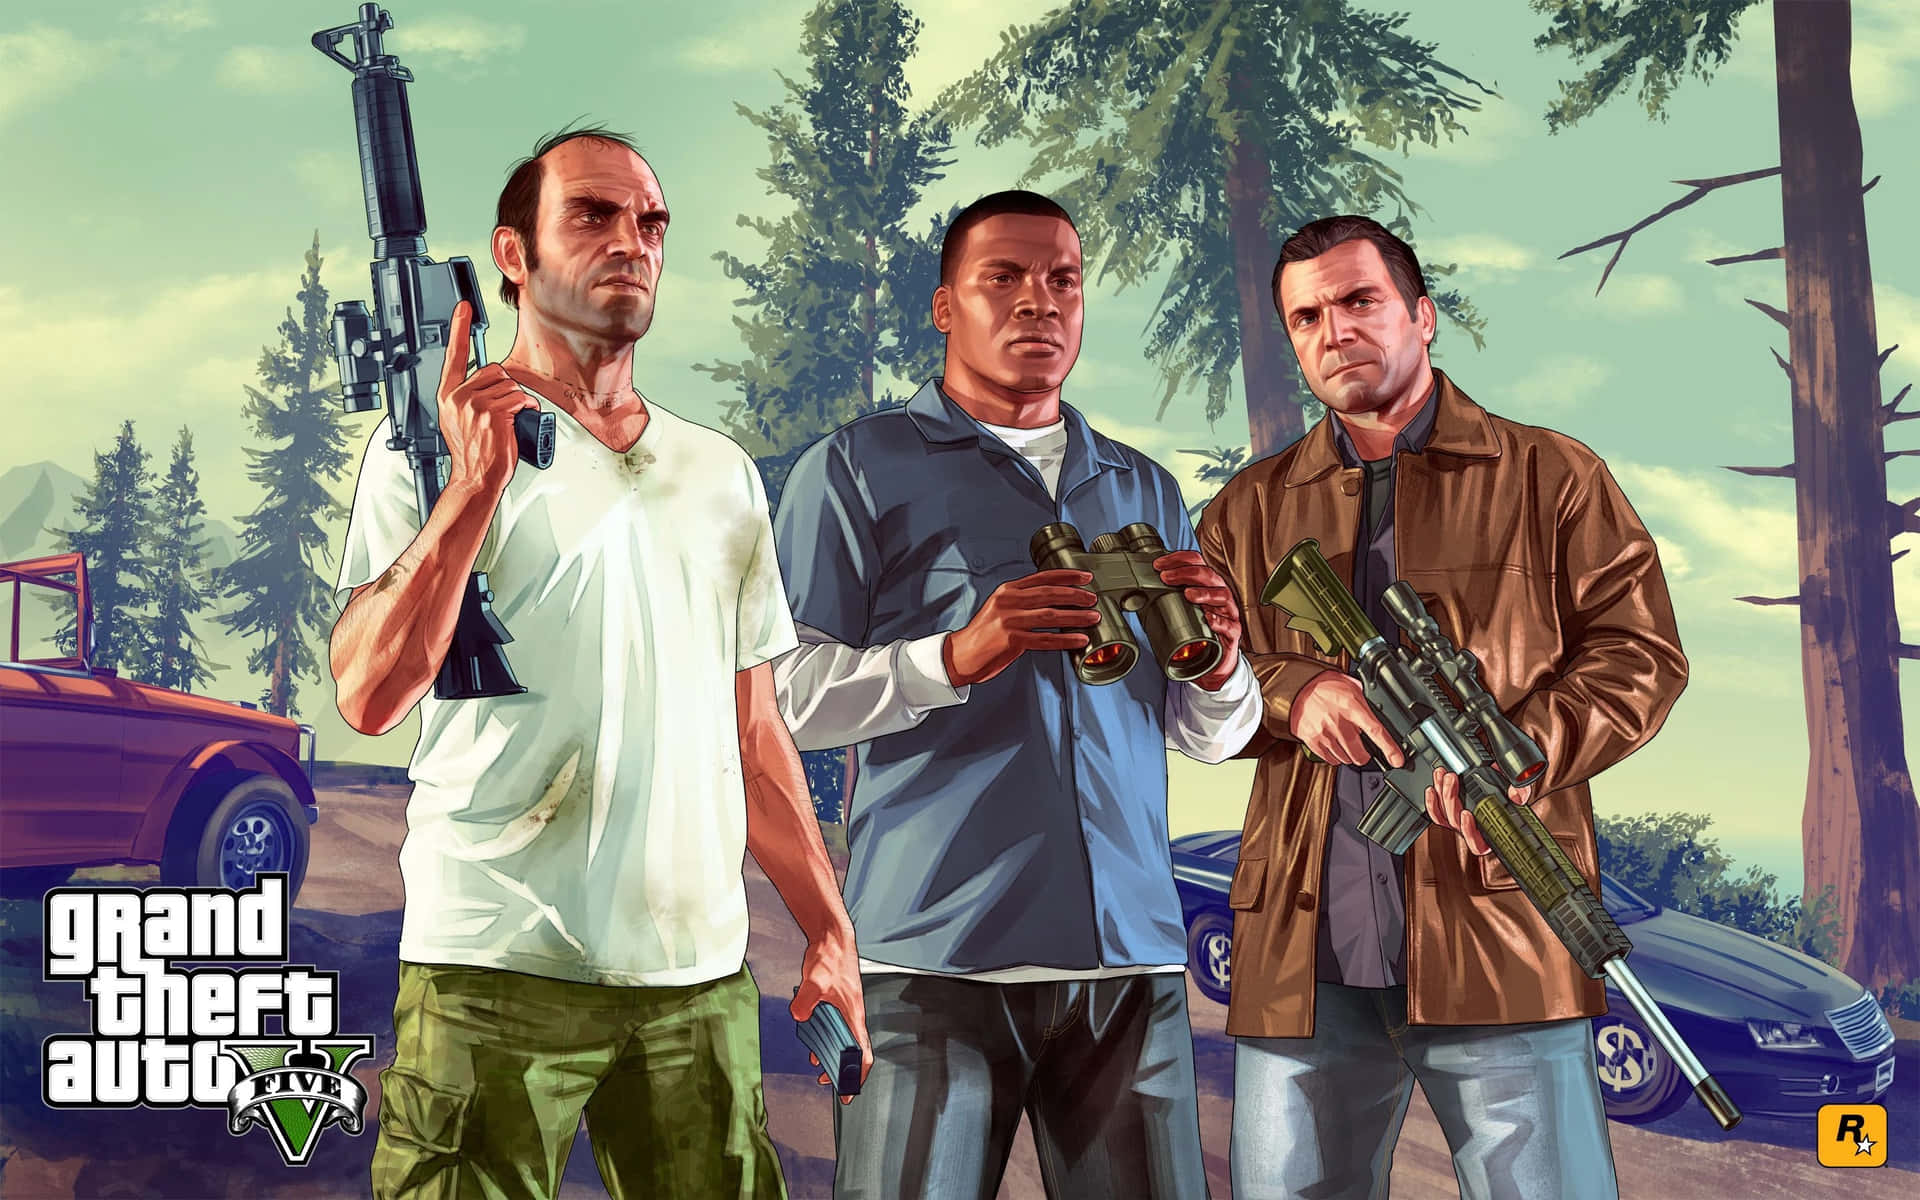 Erlebedas Aufregende Luxusleben Von Grand Theft Auto V